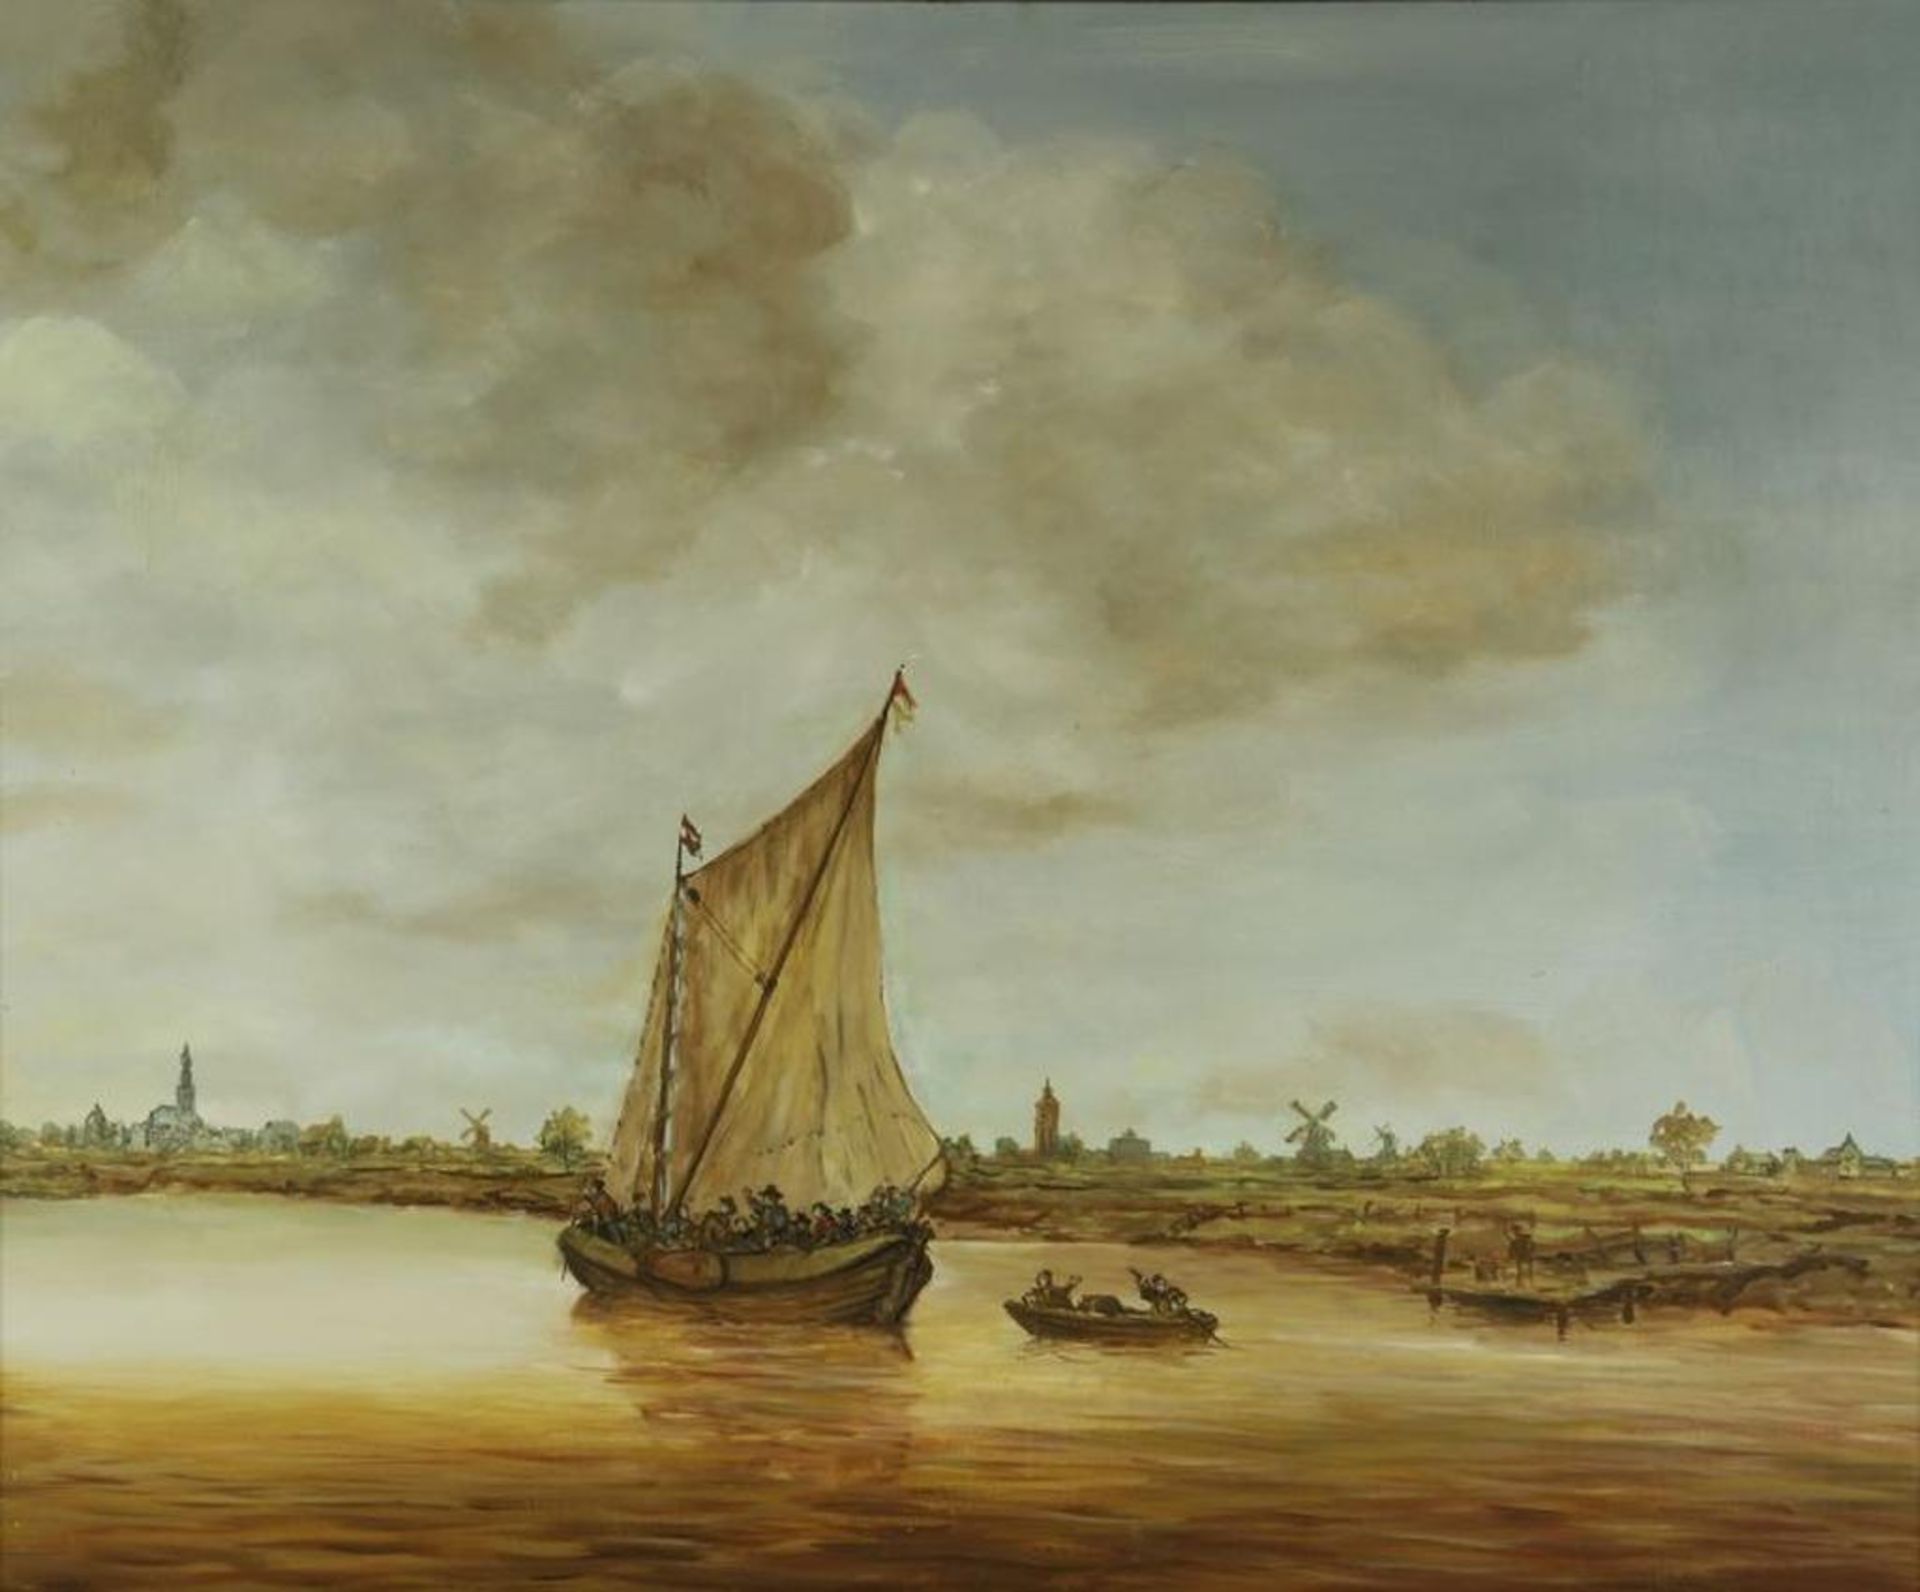 Onbekend, onges. naar Jan van Goyen, zeilboot met figuren in vaart, doek 90 x 110 cm.